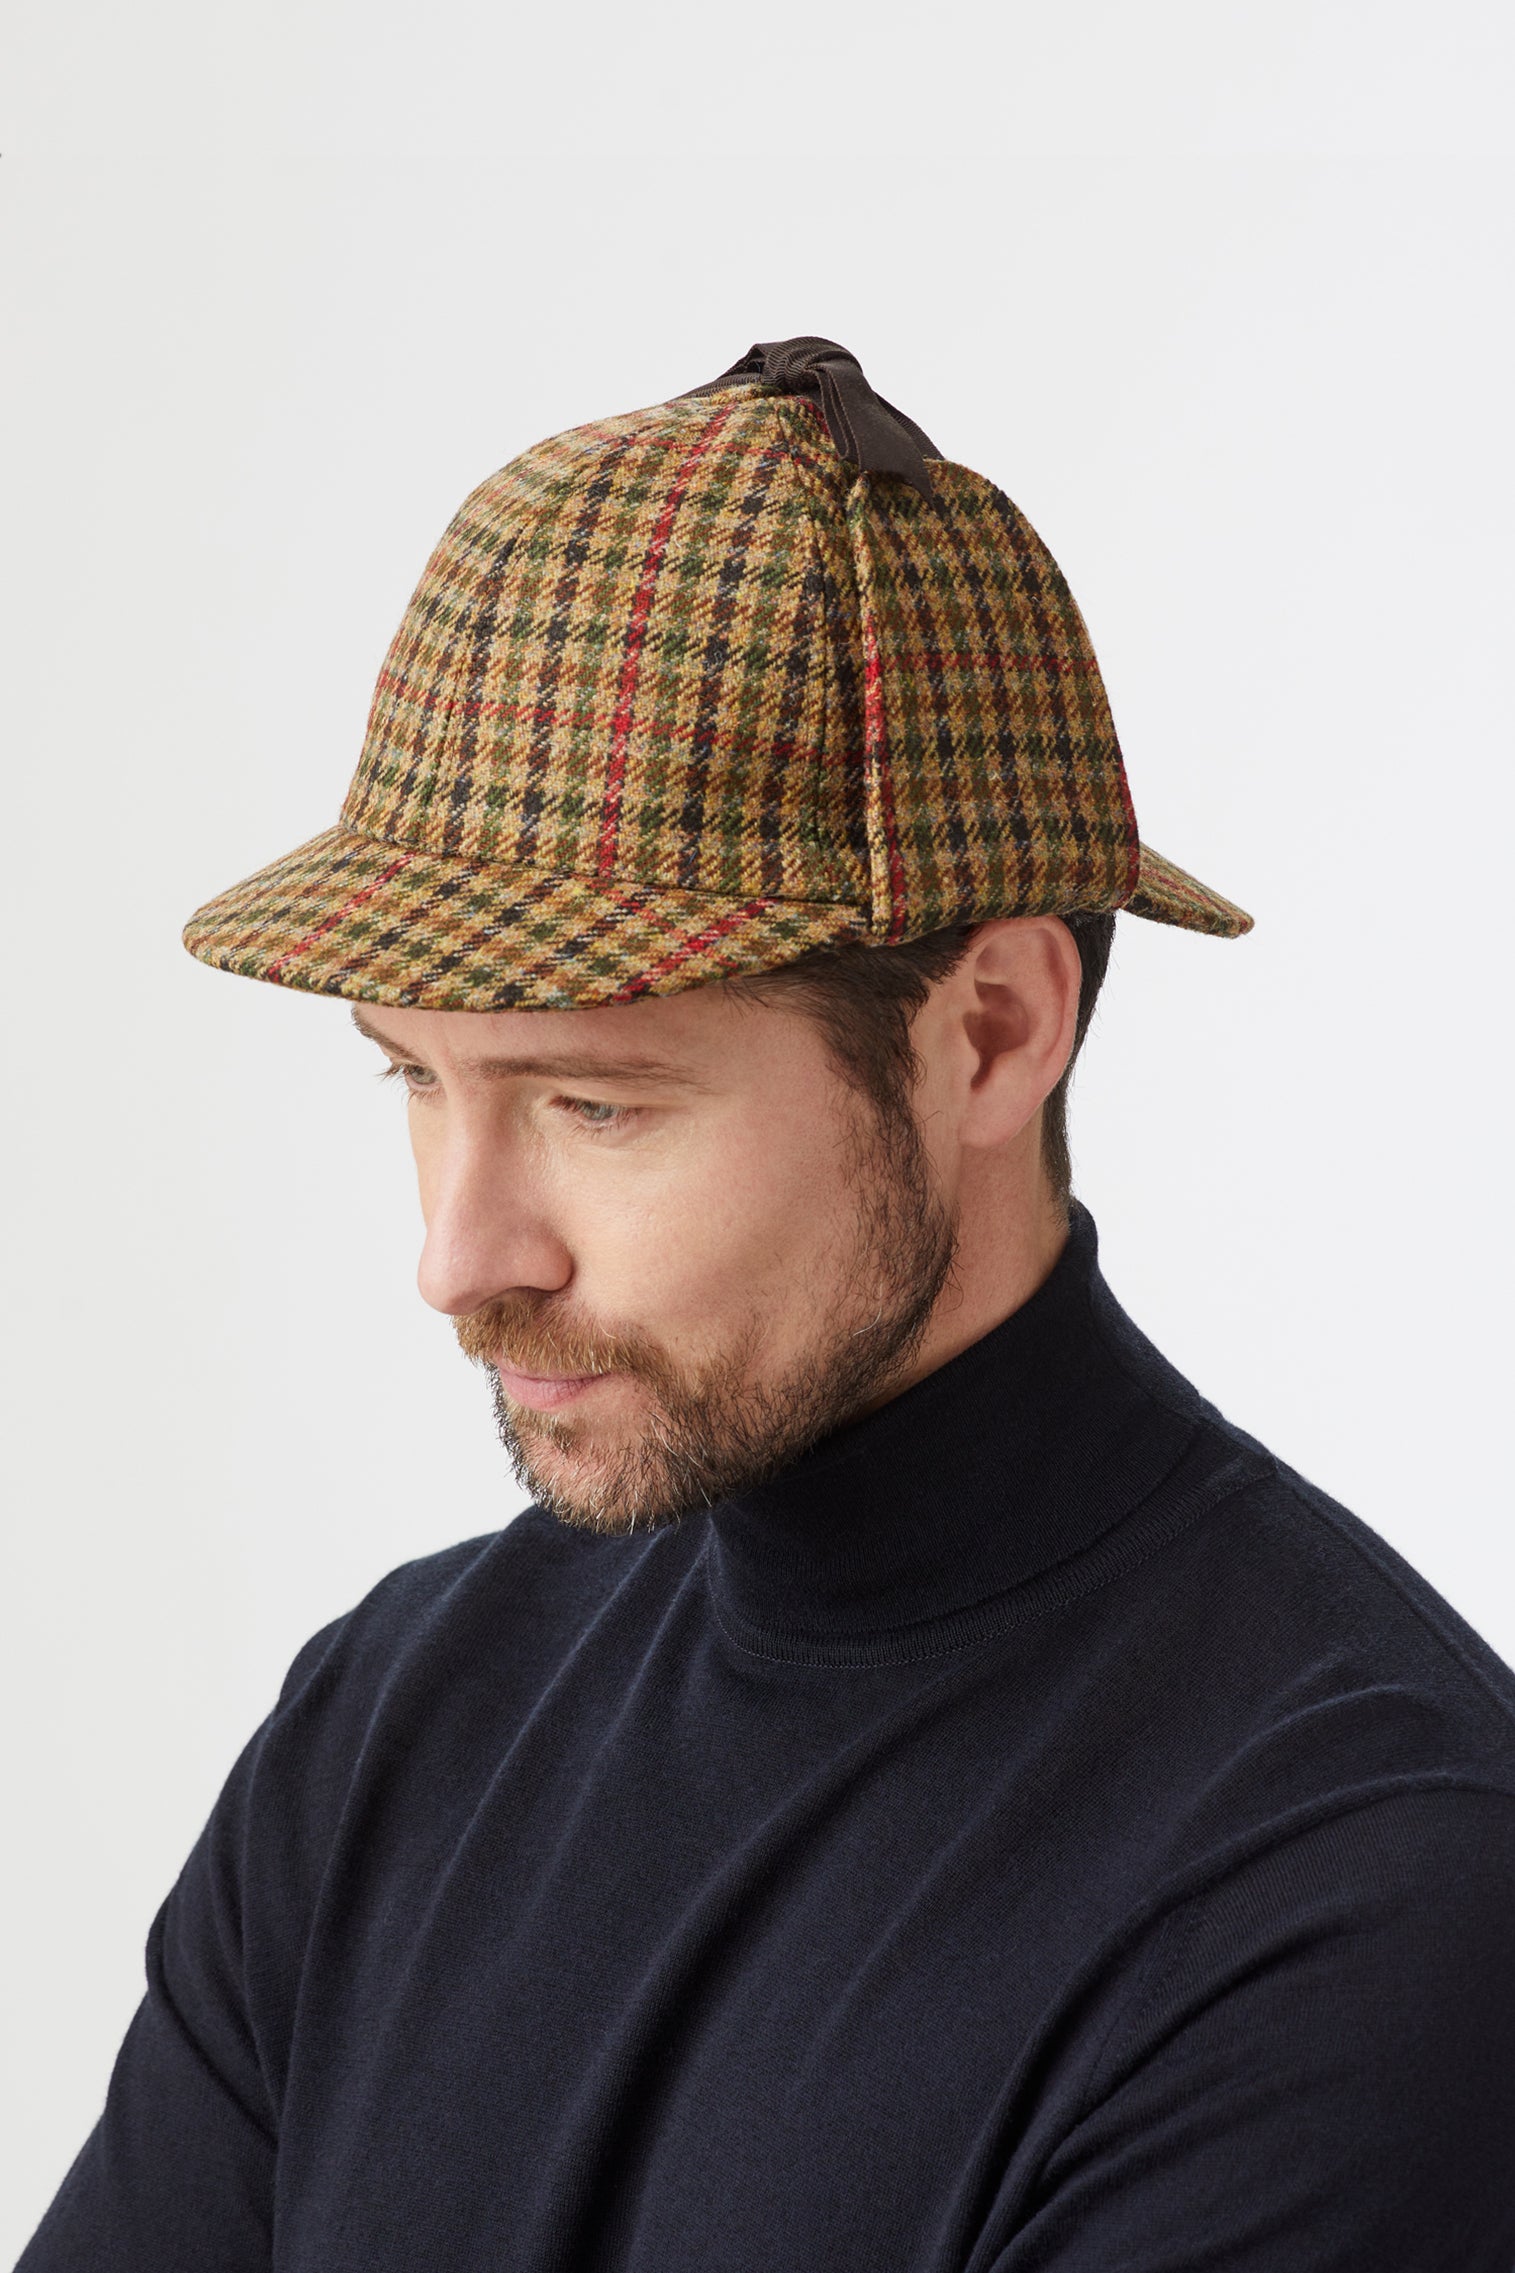 Tweed Deerstalker Hat - All Ready to Wear - Lock & Co. Hatters London UK